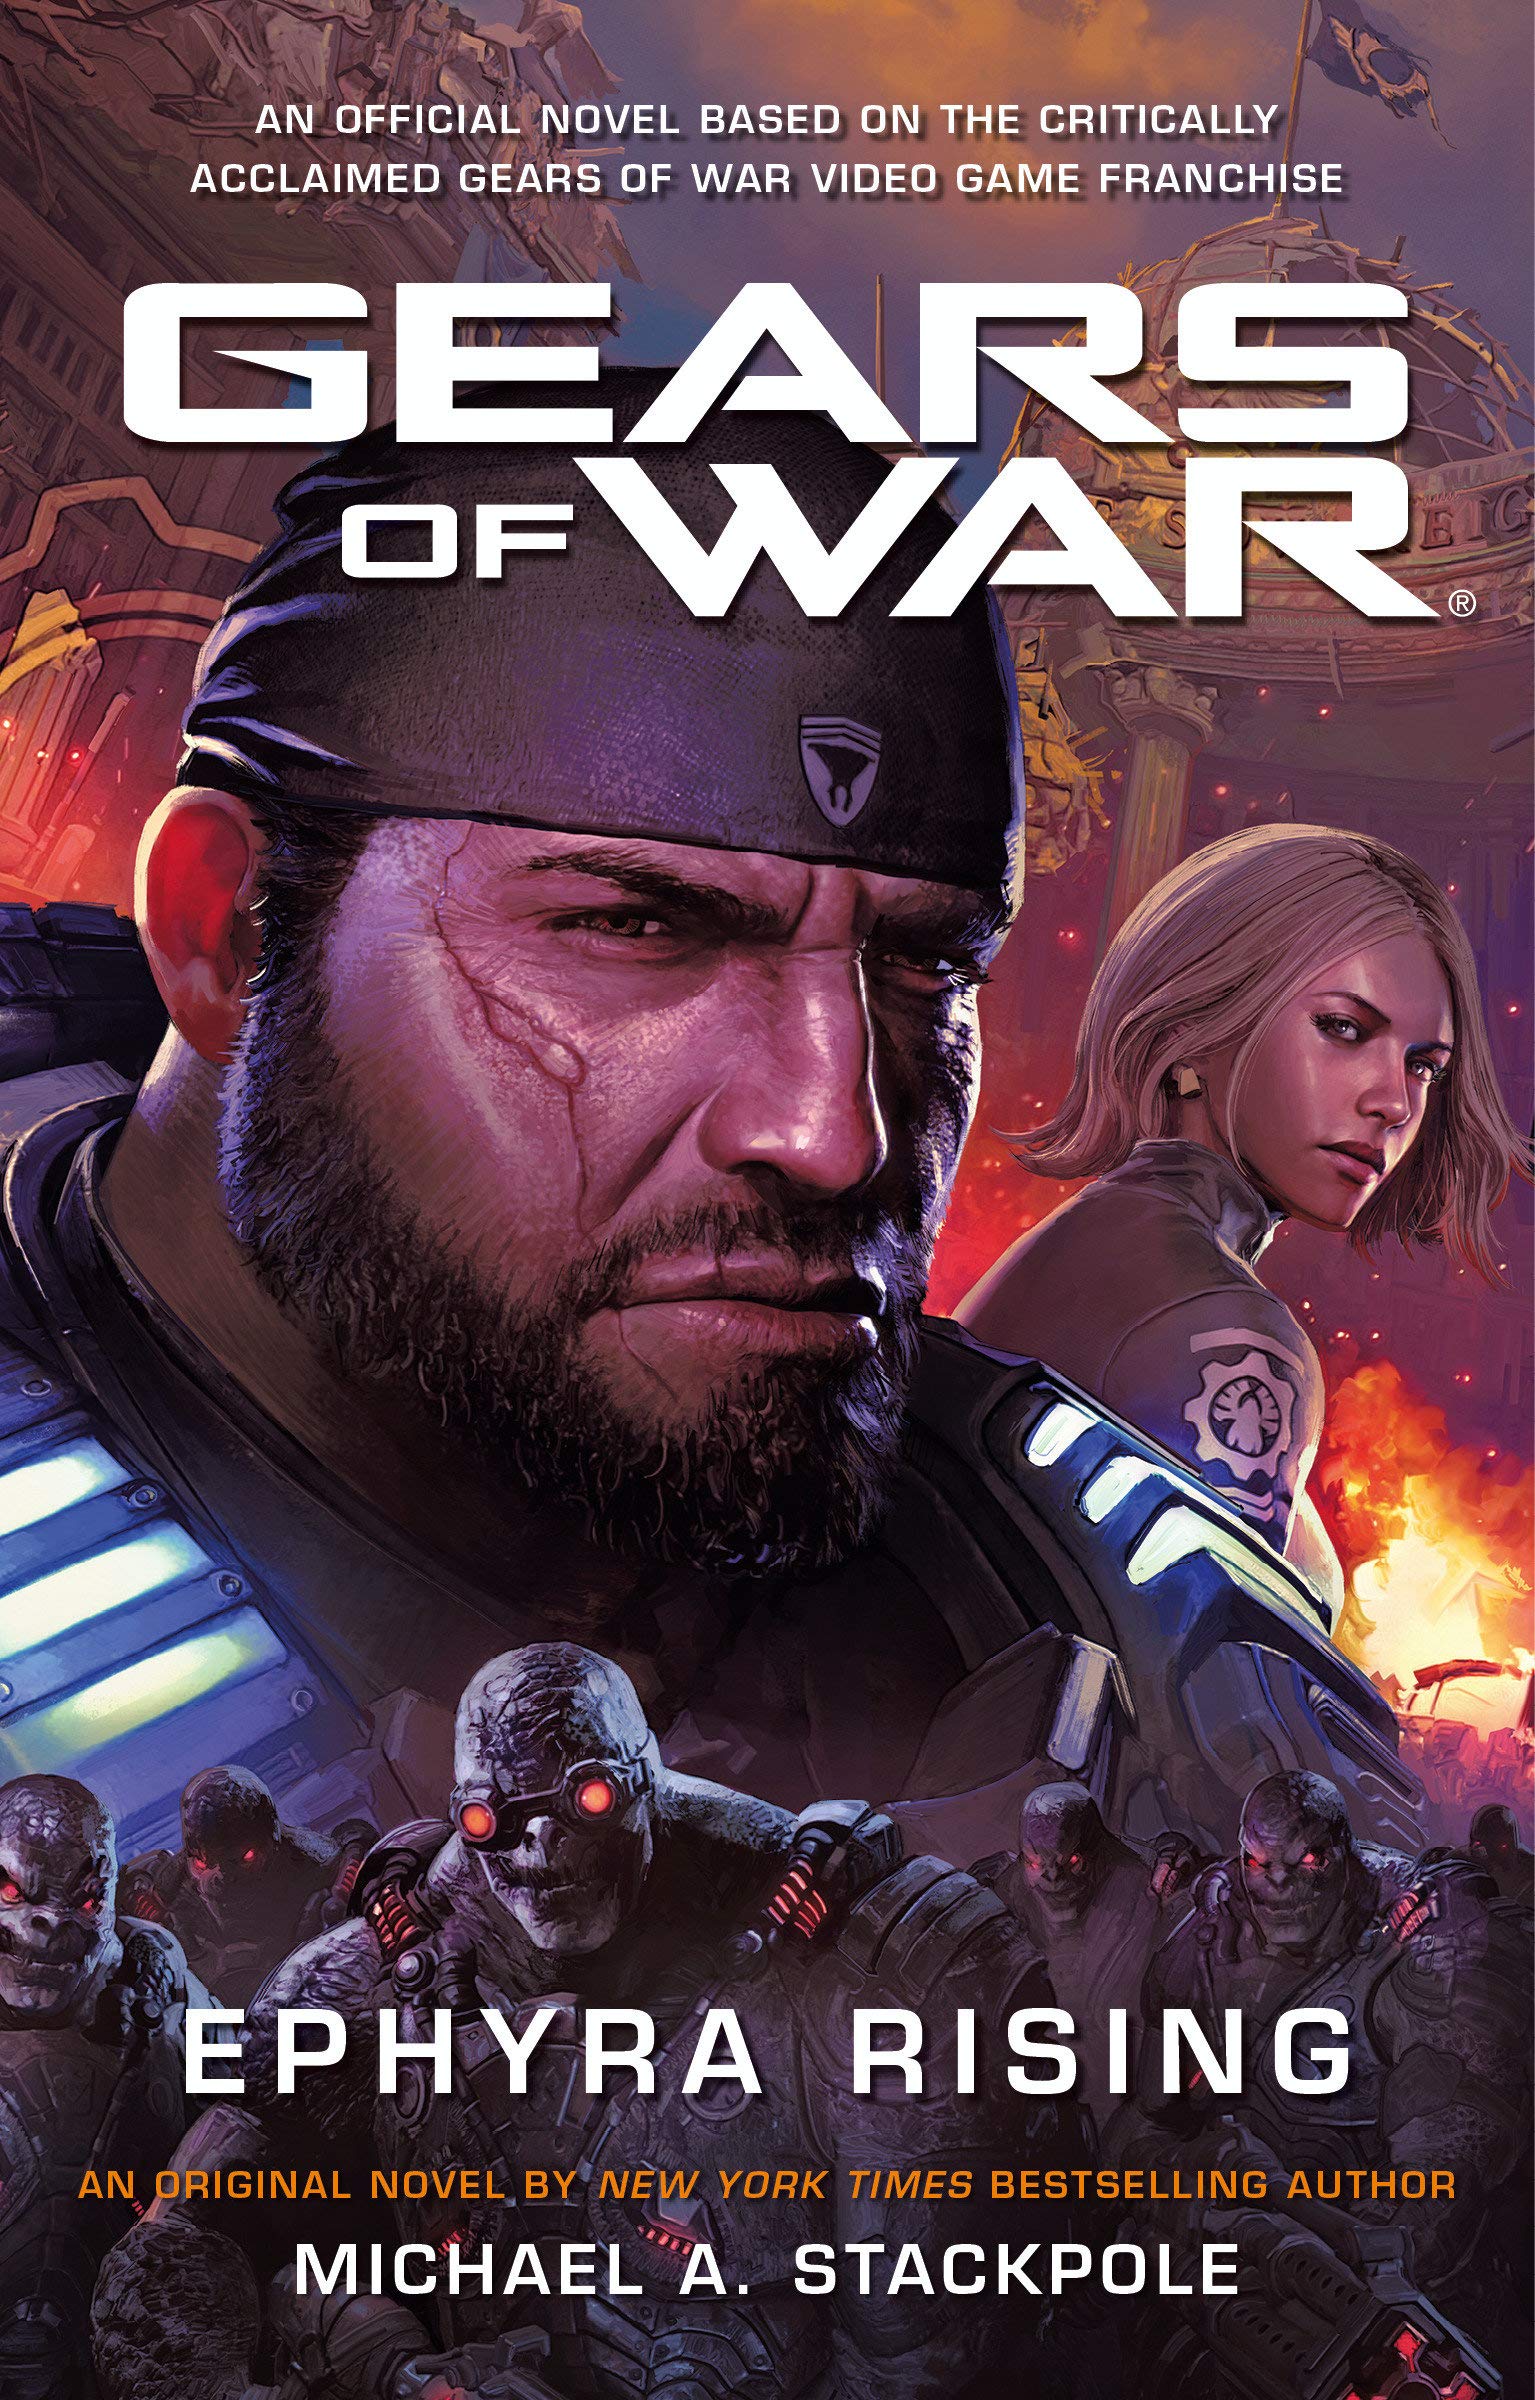 Gears of War 3 Soundtrack, Gears of War Wiki